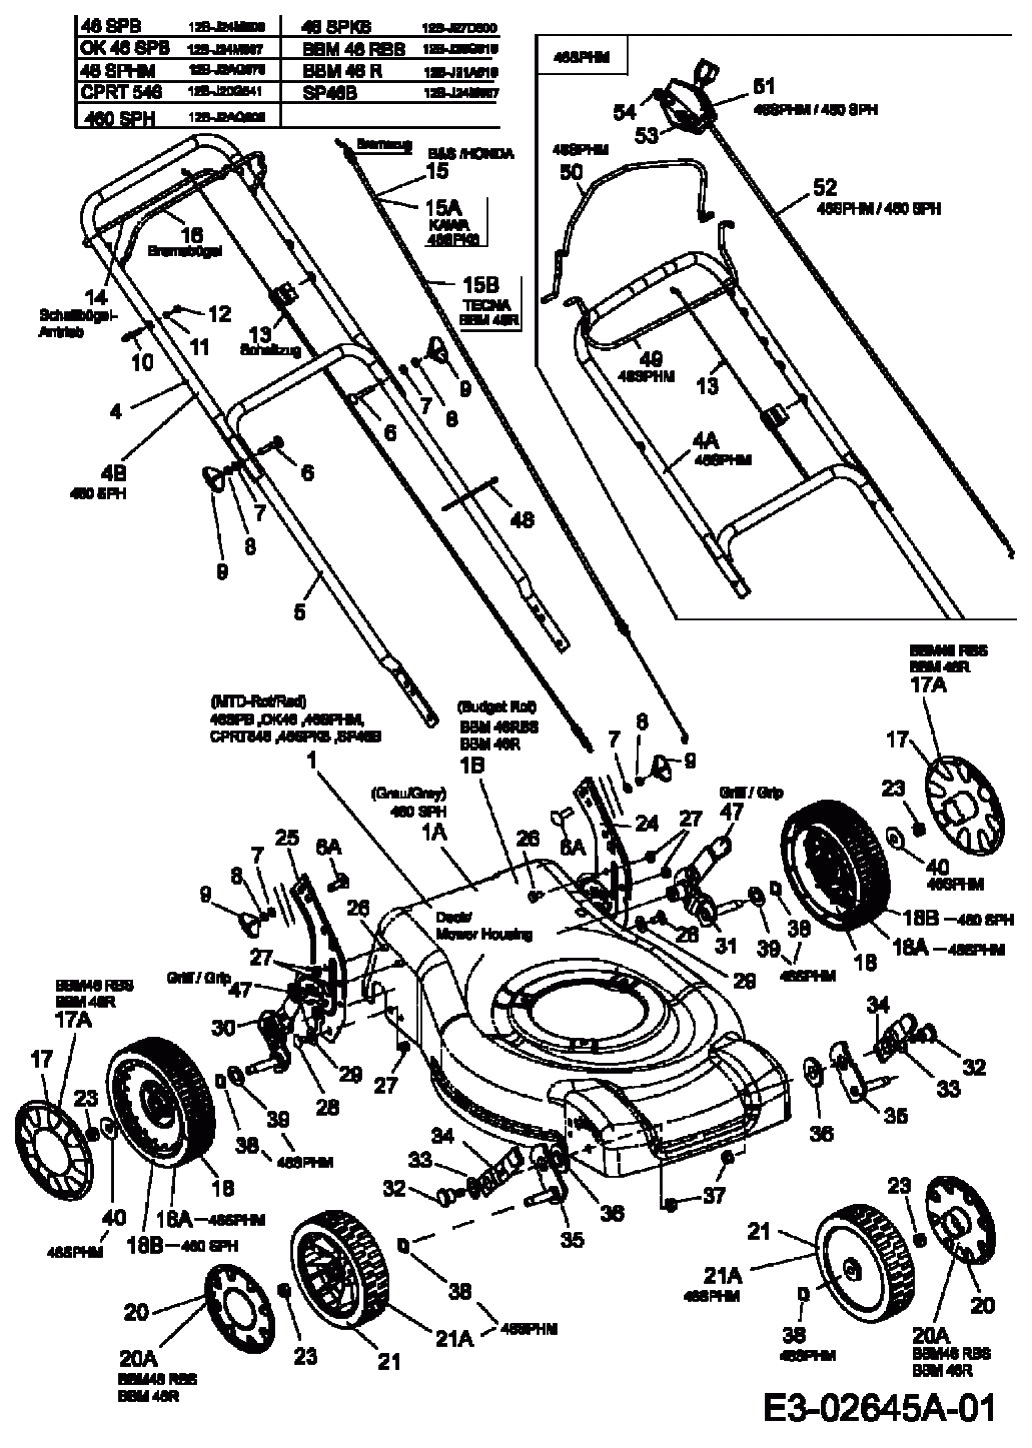 MTD Артикул 12B-J2AQ678 (год выпуска 2006). Ручка, колеса, регулятор высоты реза